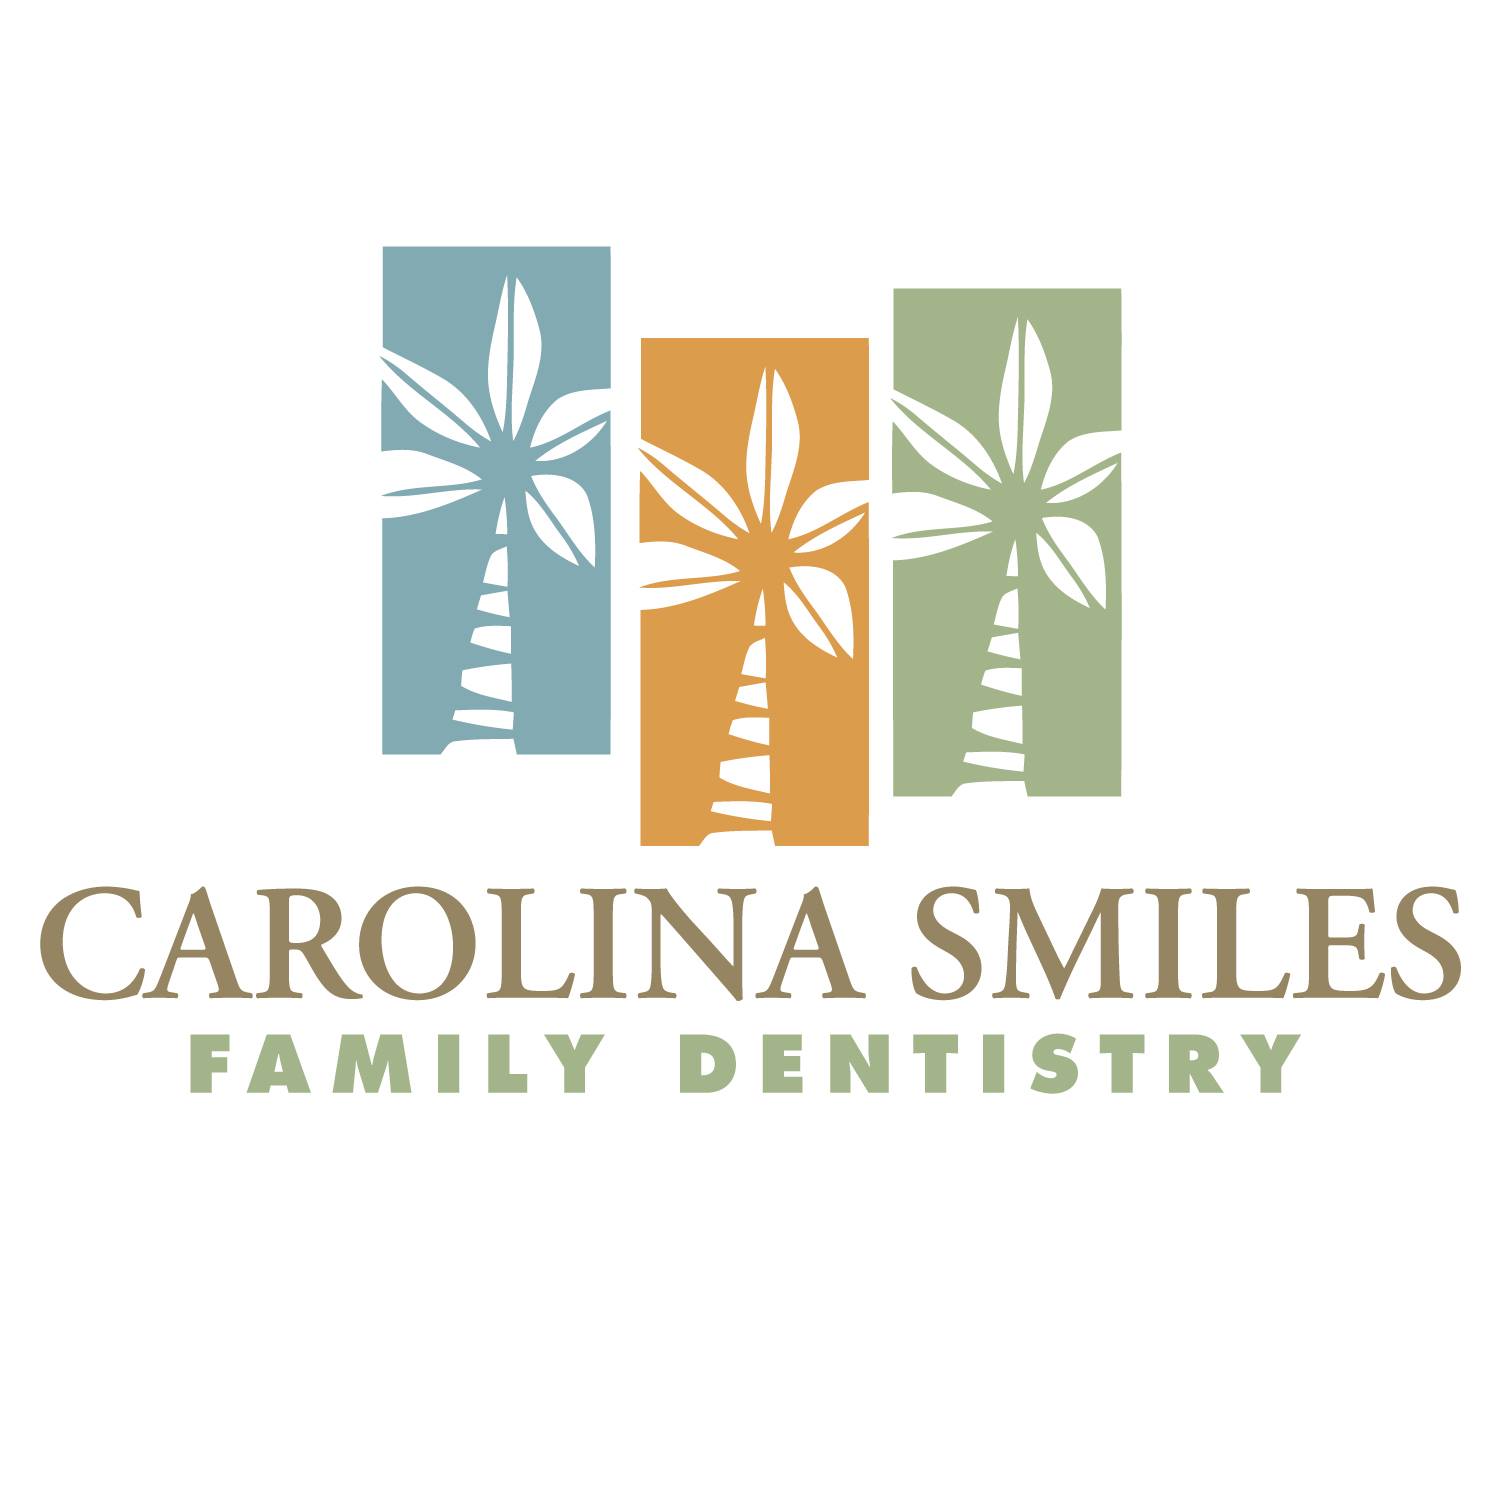 Company logo of Carolina Smiles Family Dentistry